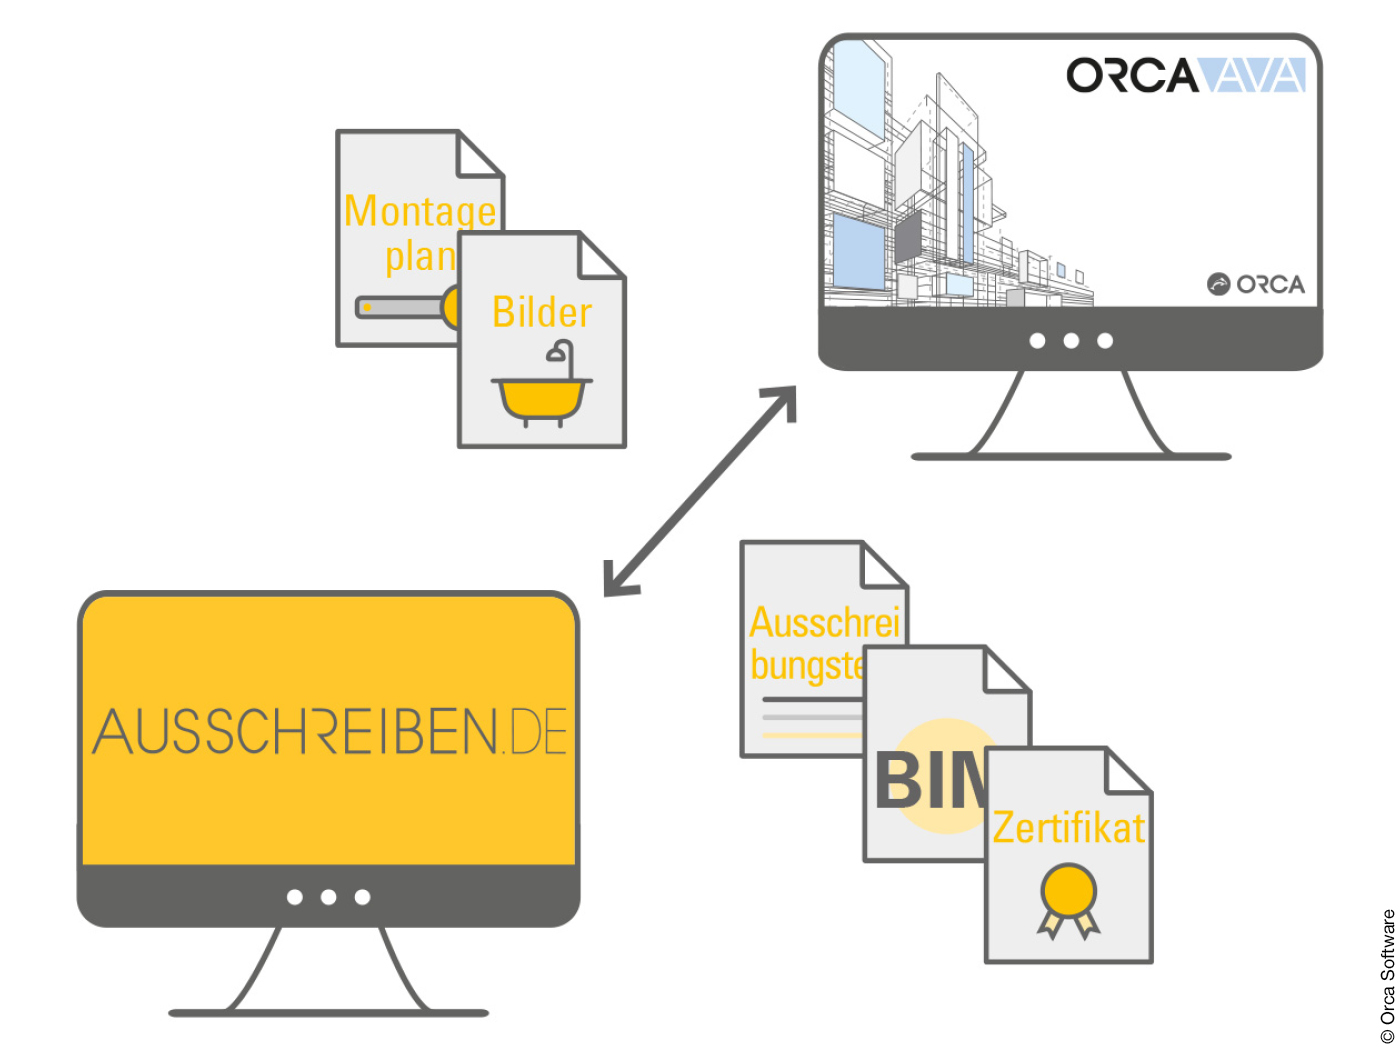 Grafik zur Integration von Ausschreiben.de in die Orca AVA Software